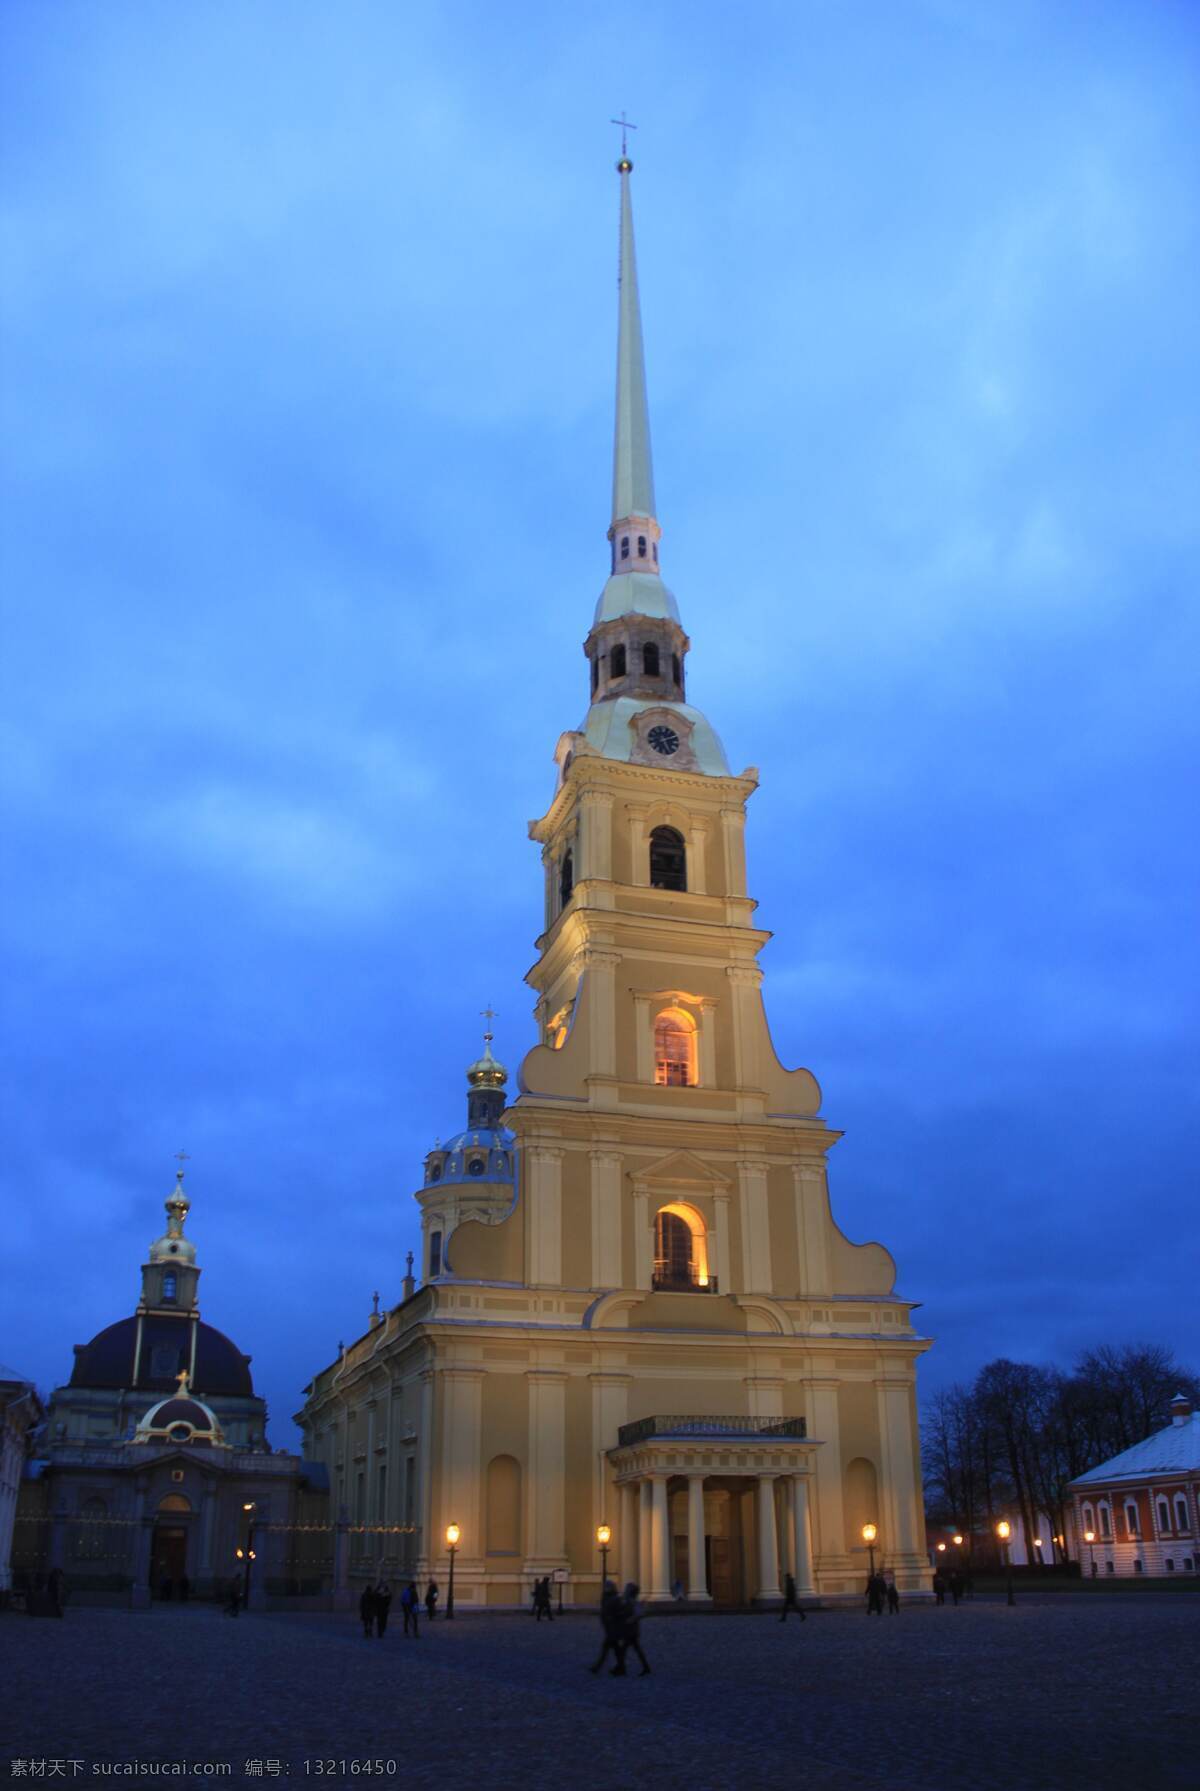 俄罗斯的建筑 塔式 建筑 黄色 蓝天 灯光 尖顶 俄罗斯 照片 国外旅游 旅游摄影 蓝色